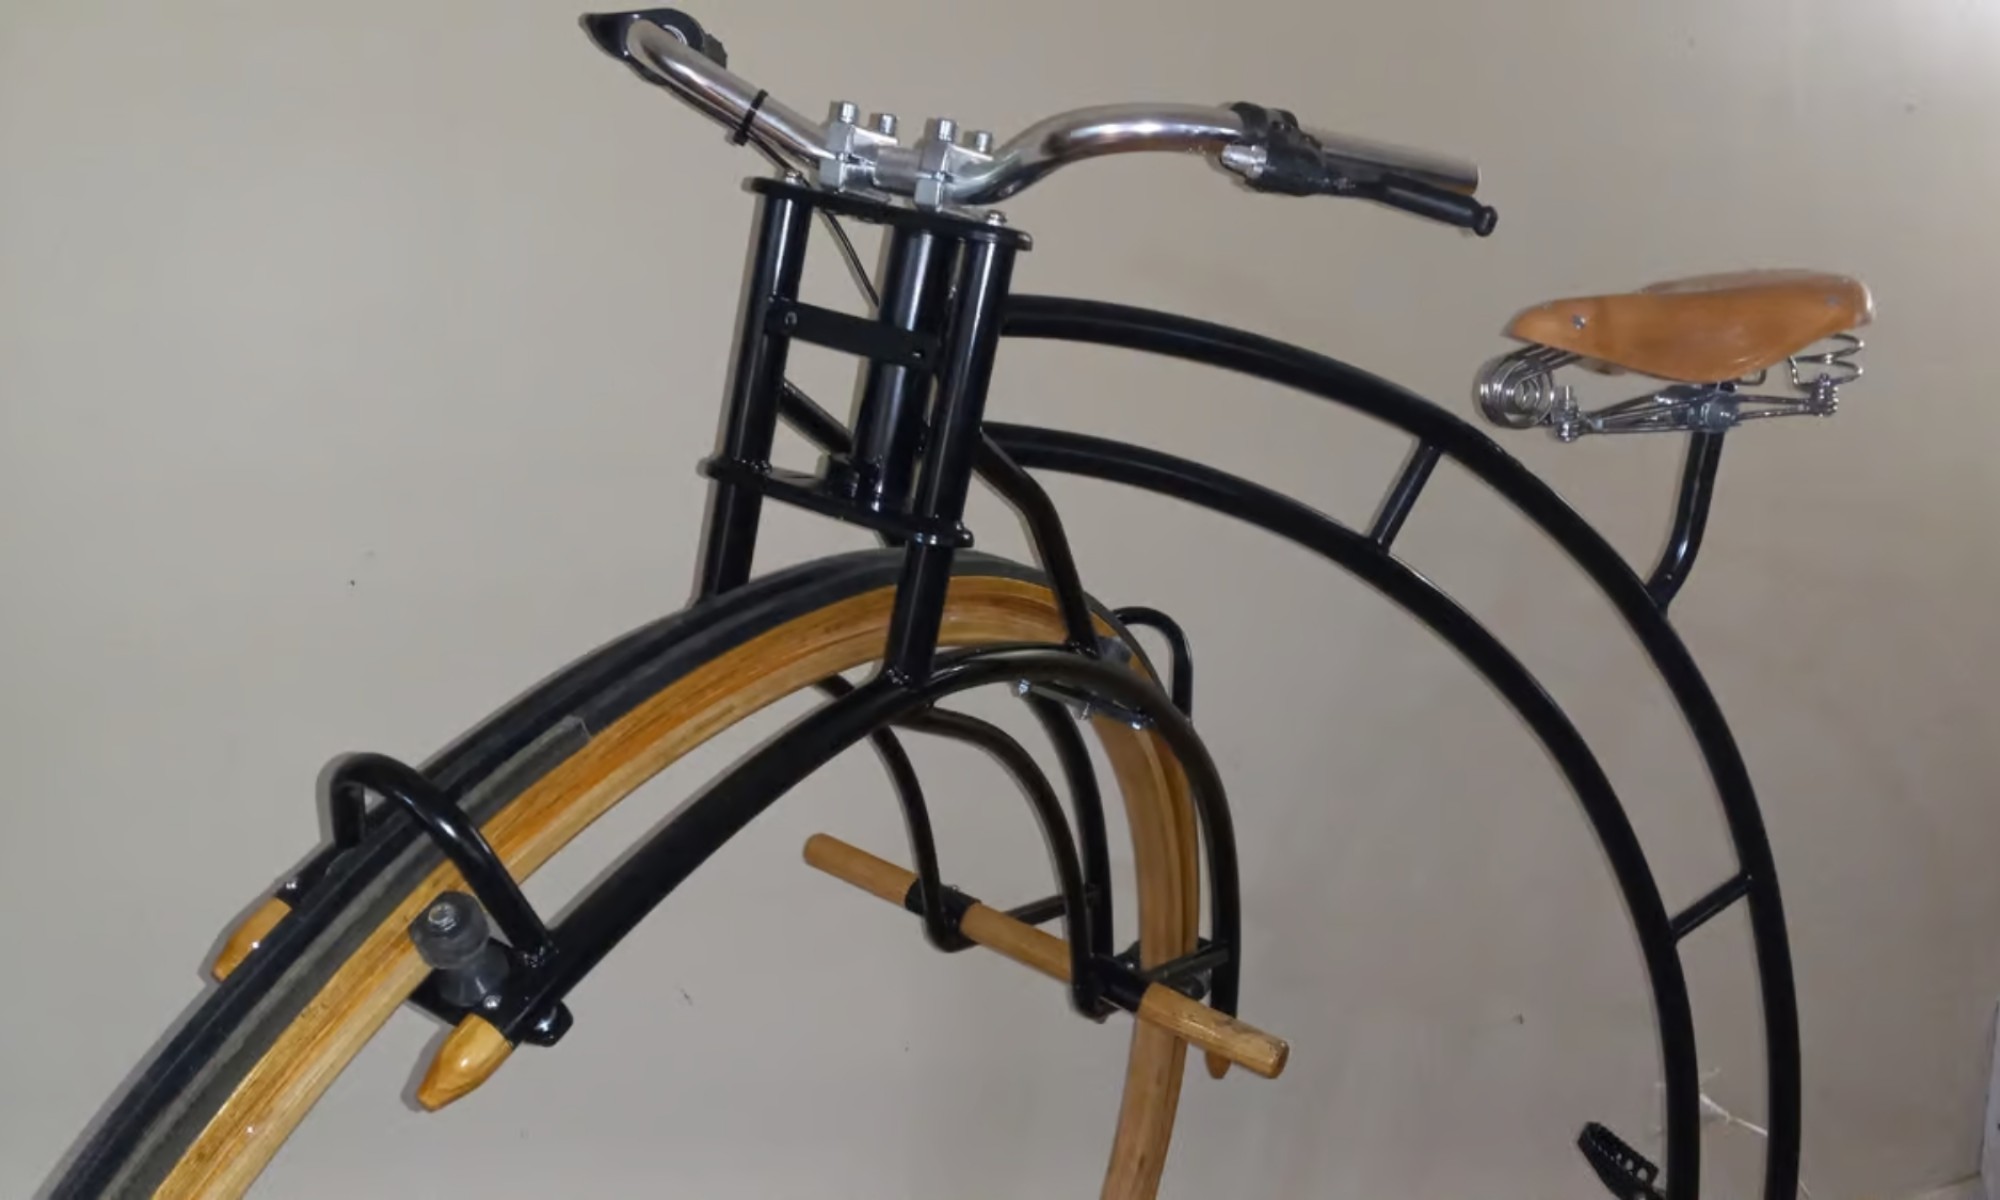 Este velocípedo eléctrico destaca por usar una combinación de metal y madera en su estructura